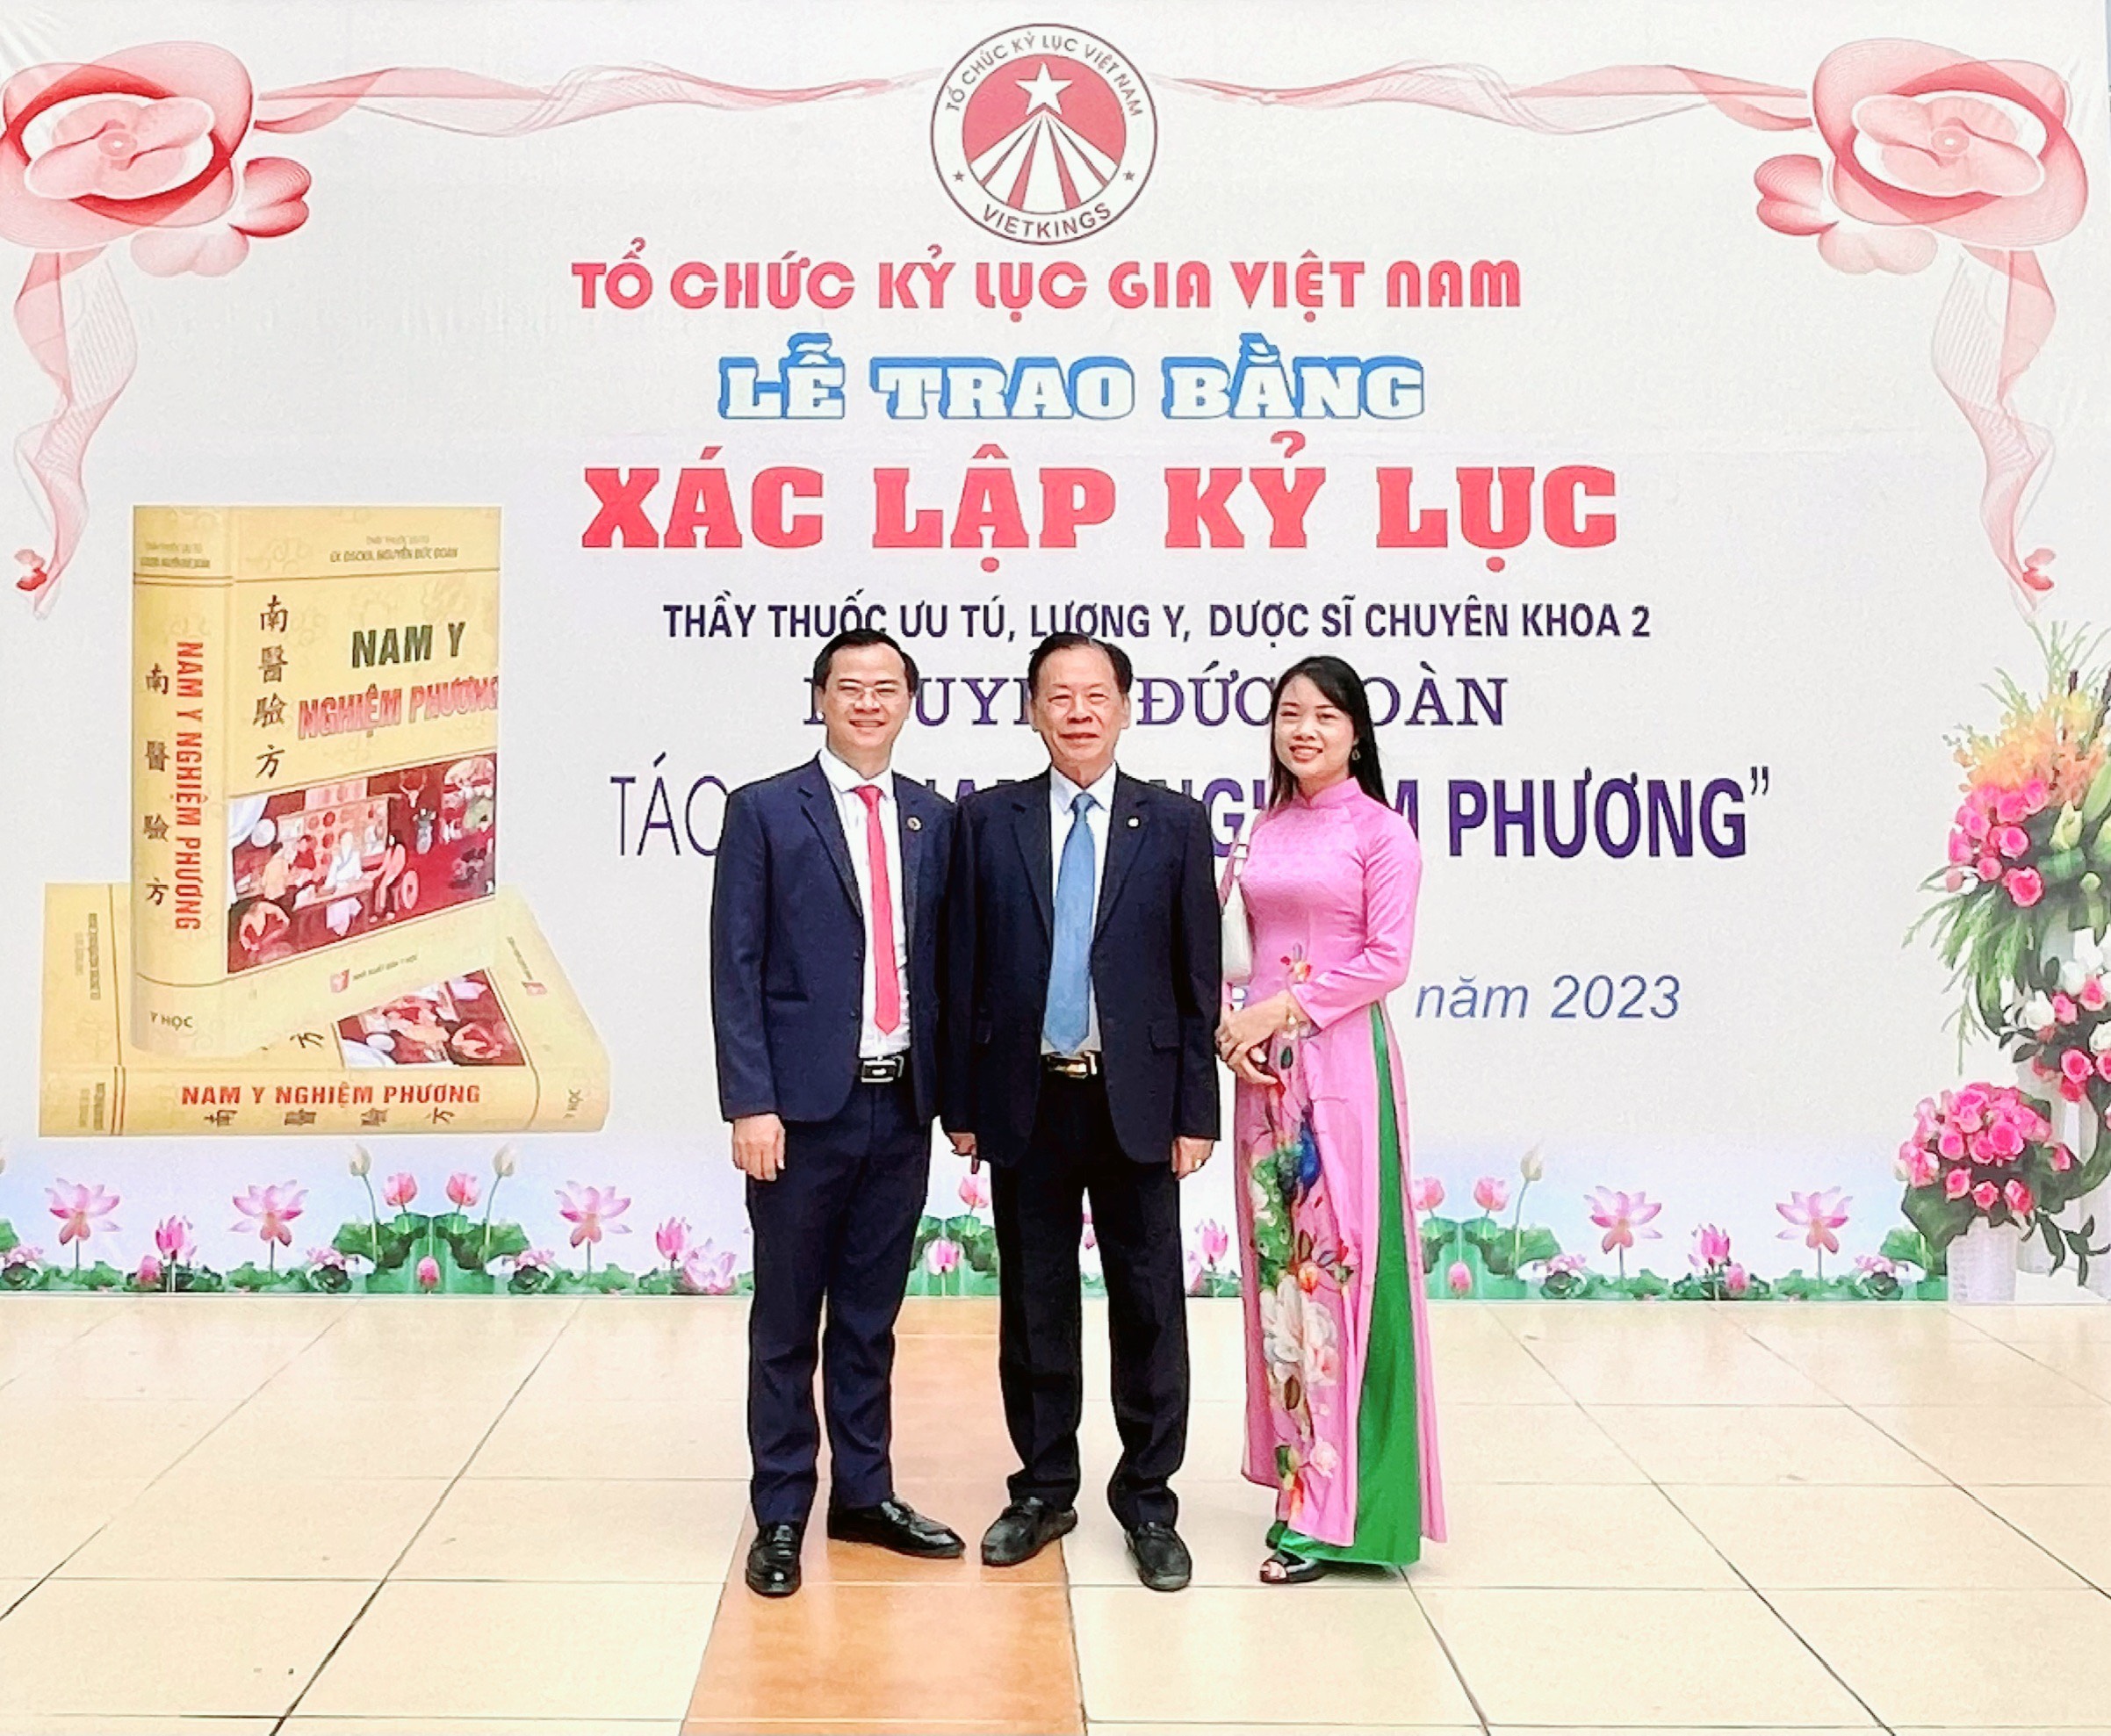 Đoãn lãnh đạo TW Hội Kỷ lục Gia Việt Nam, Tổ chức Kỷ lục Việt Nam tham dự chương trình.